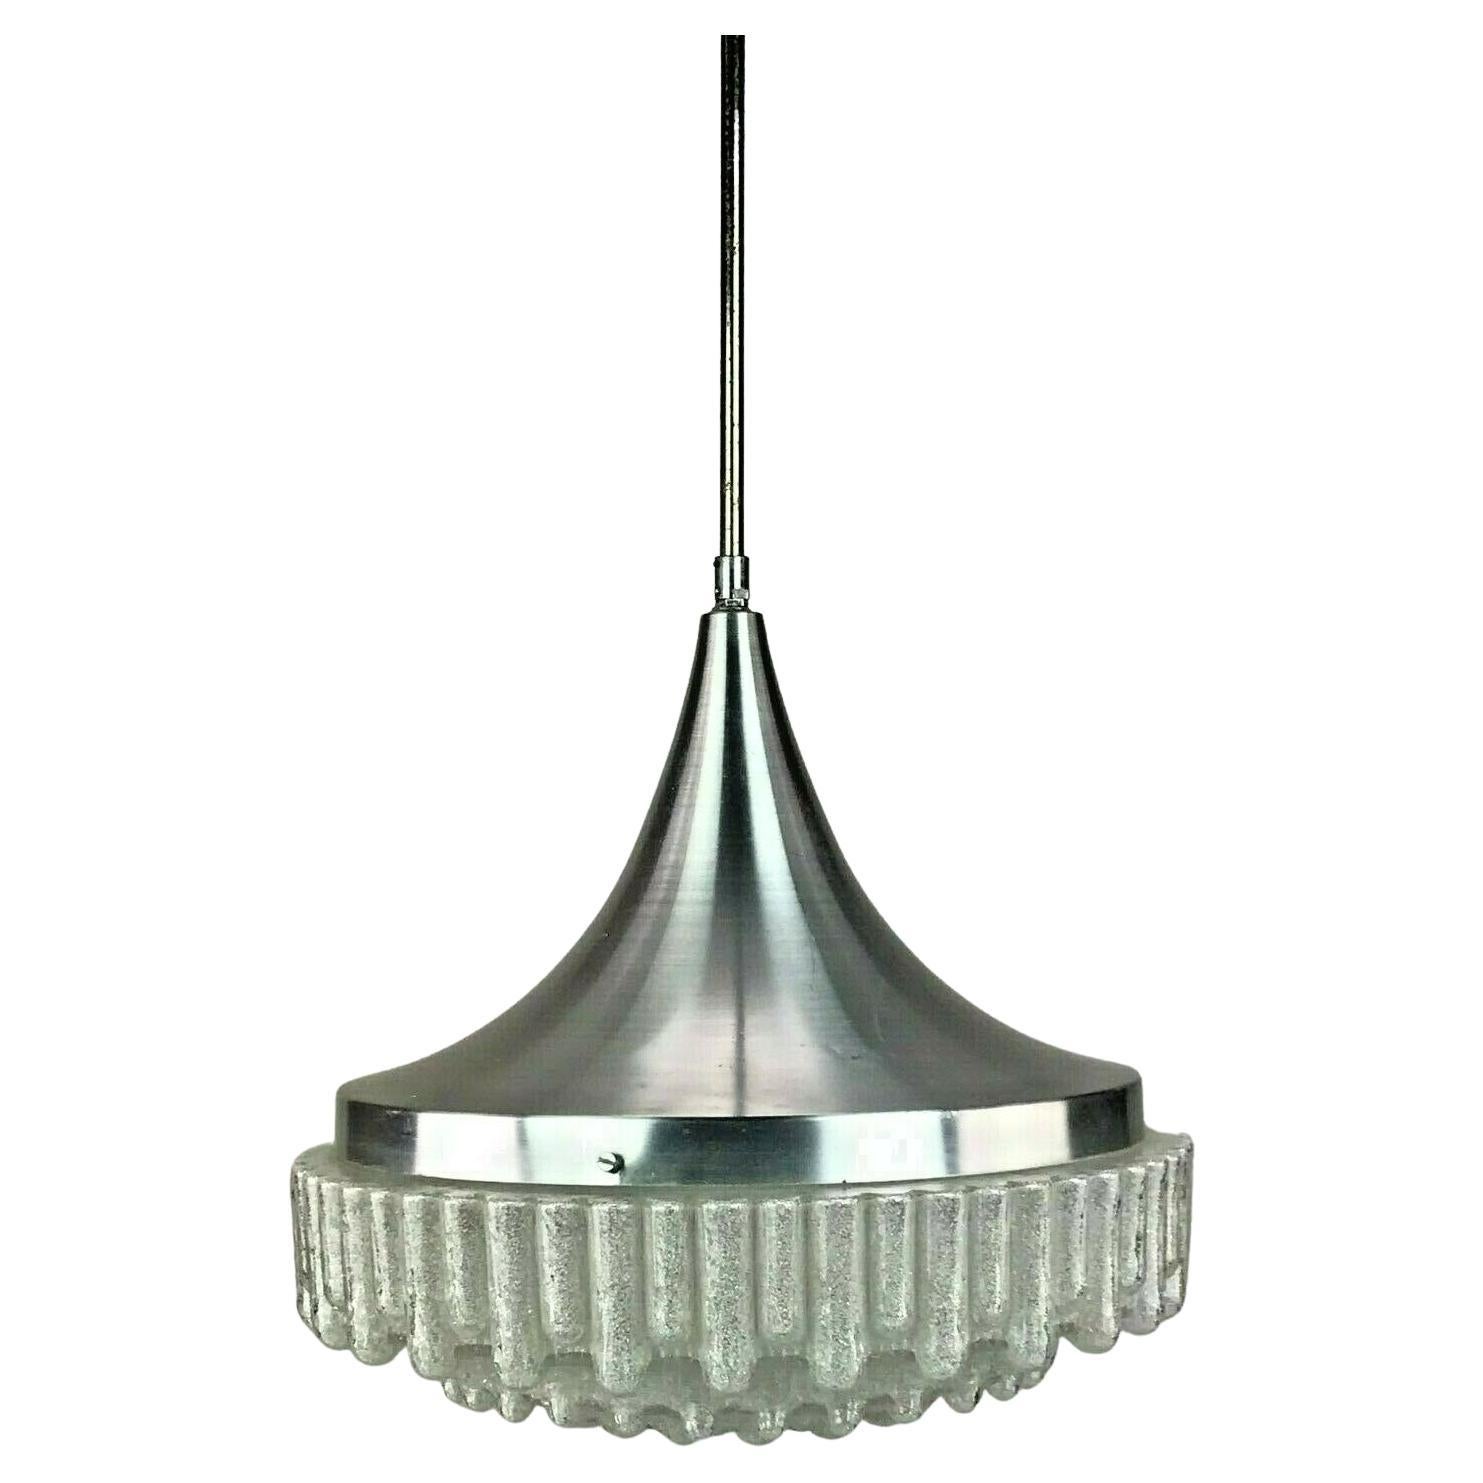 60er-Jahre-Lampe, Hängeleuchte, Kugellampe, Blase, Chrom, Glas, Space Age Design